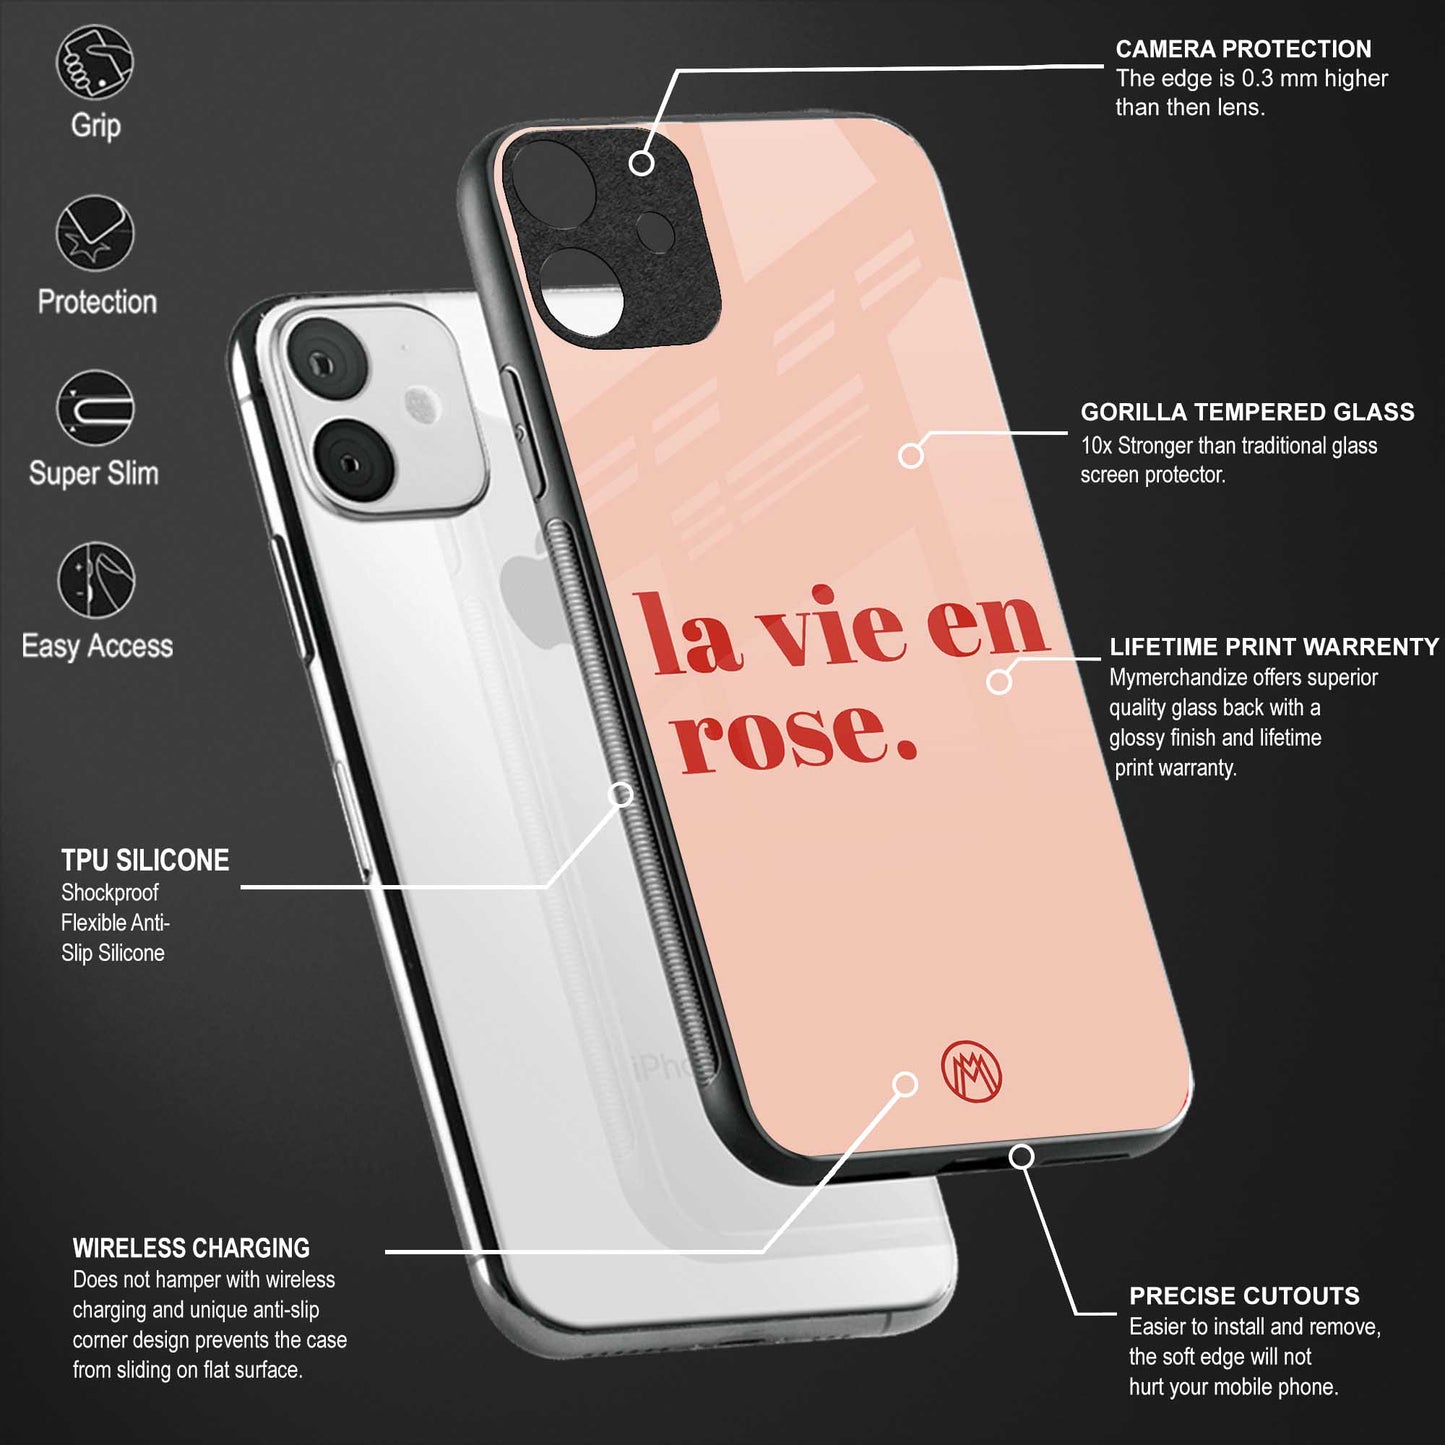 la vie en rose quote glass case for iphone 12 mini image-4